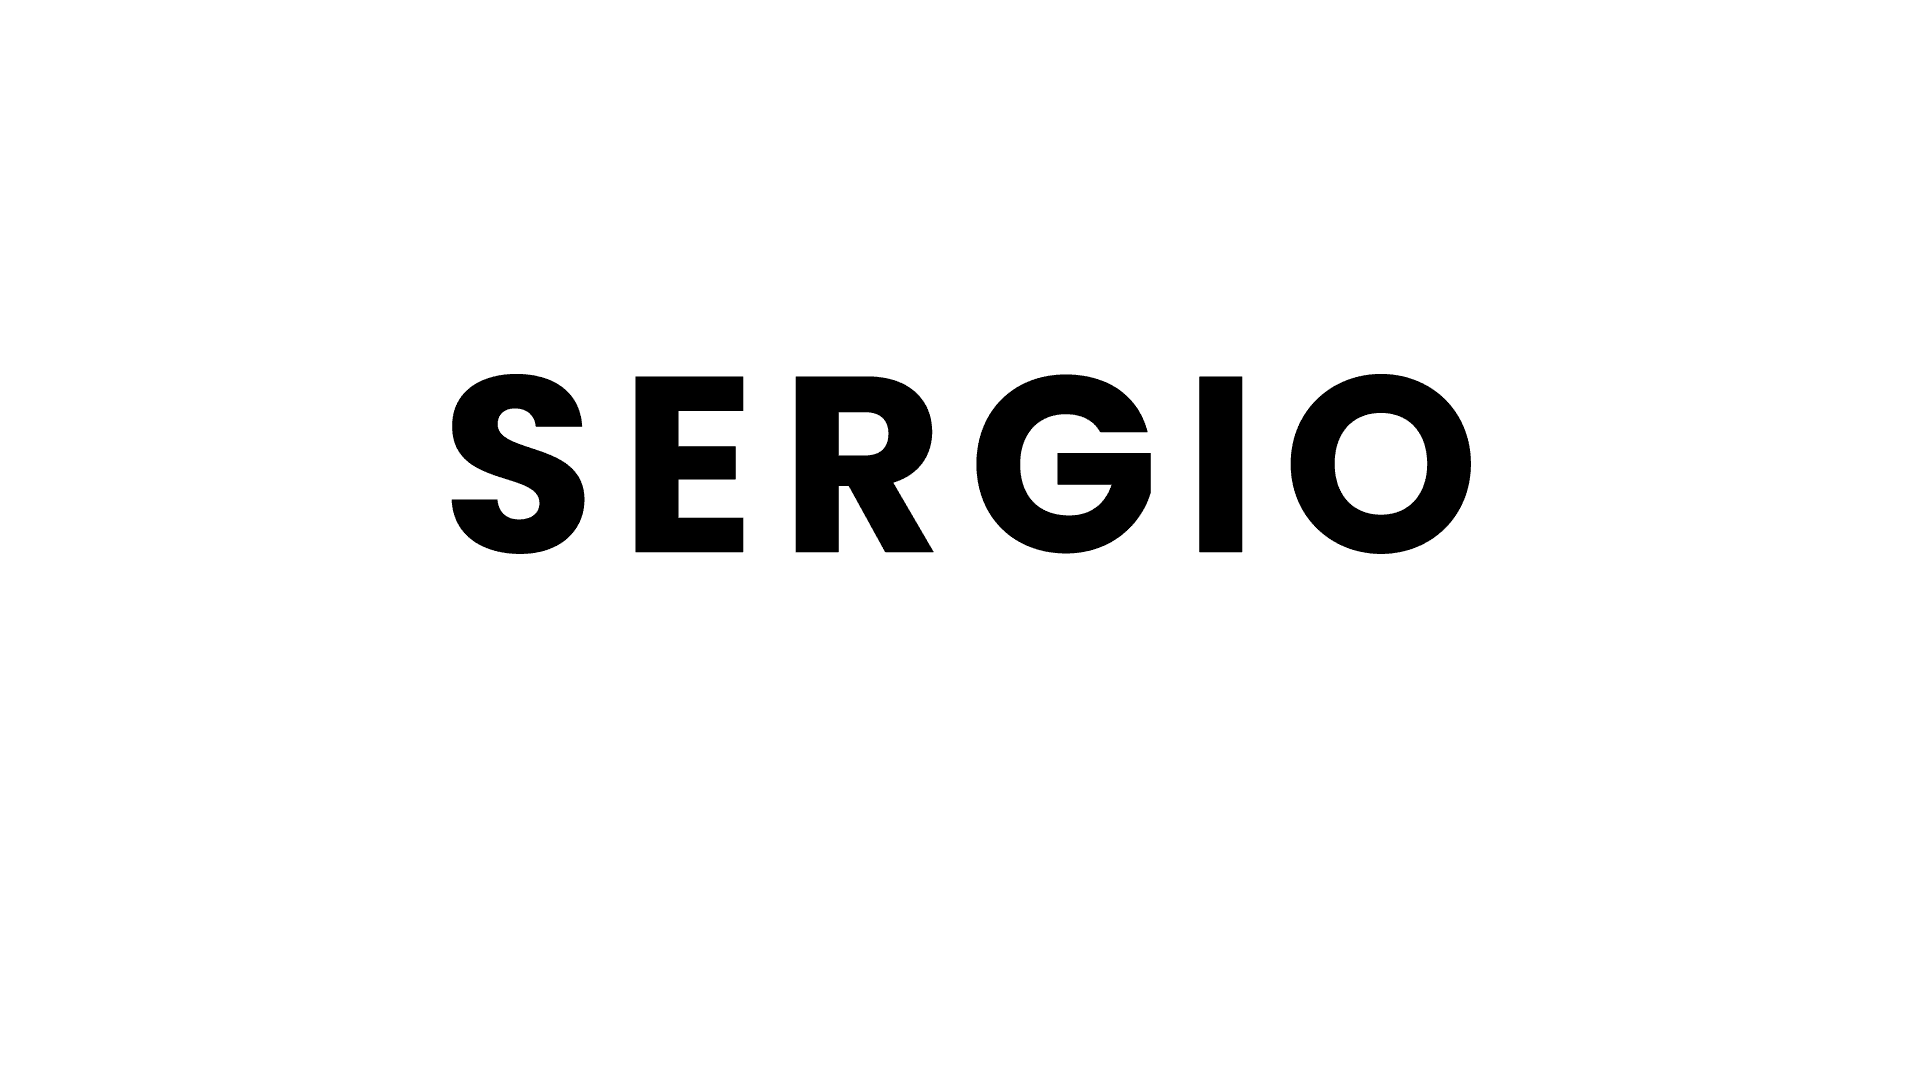 Sergio | سرجیو | لوازم خانگی توسلی